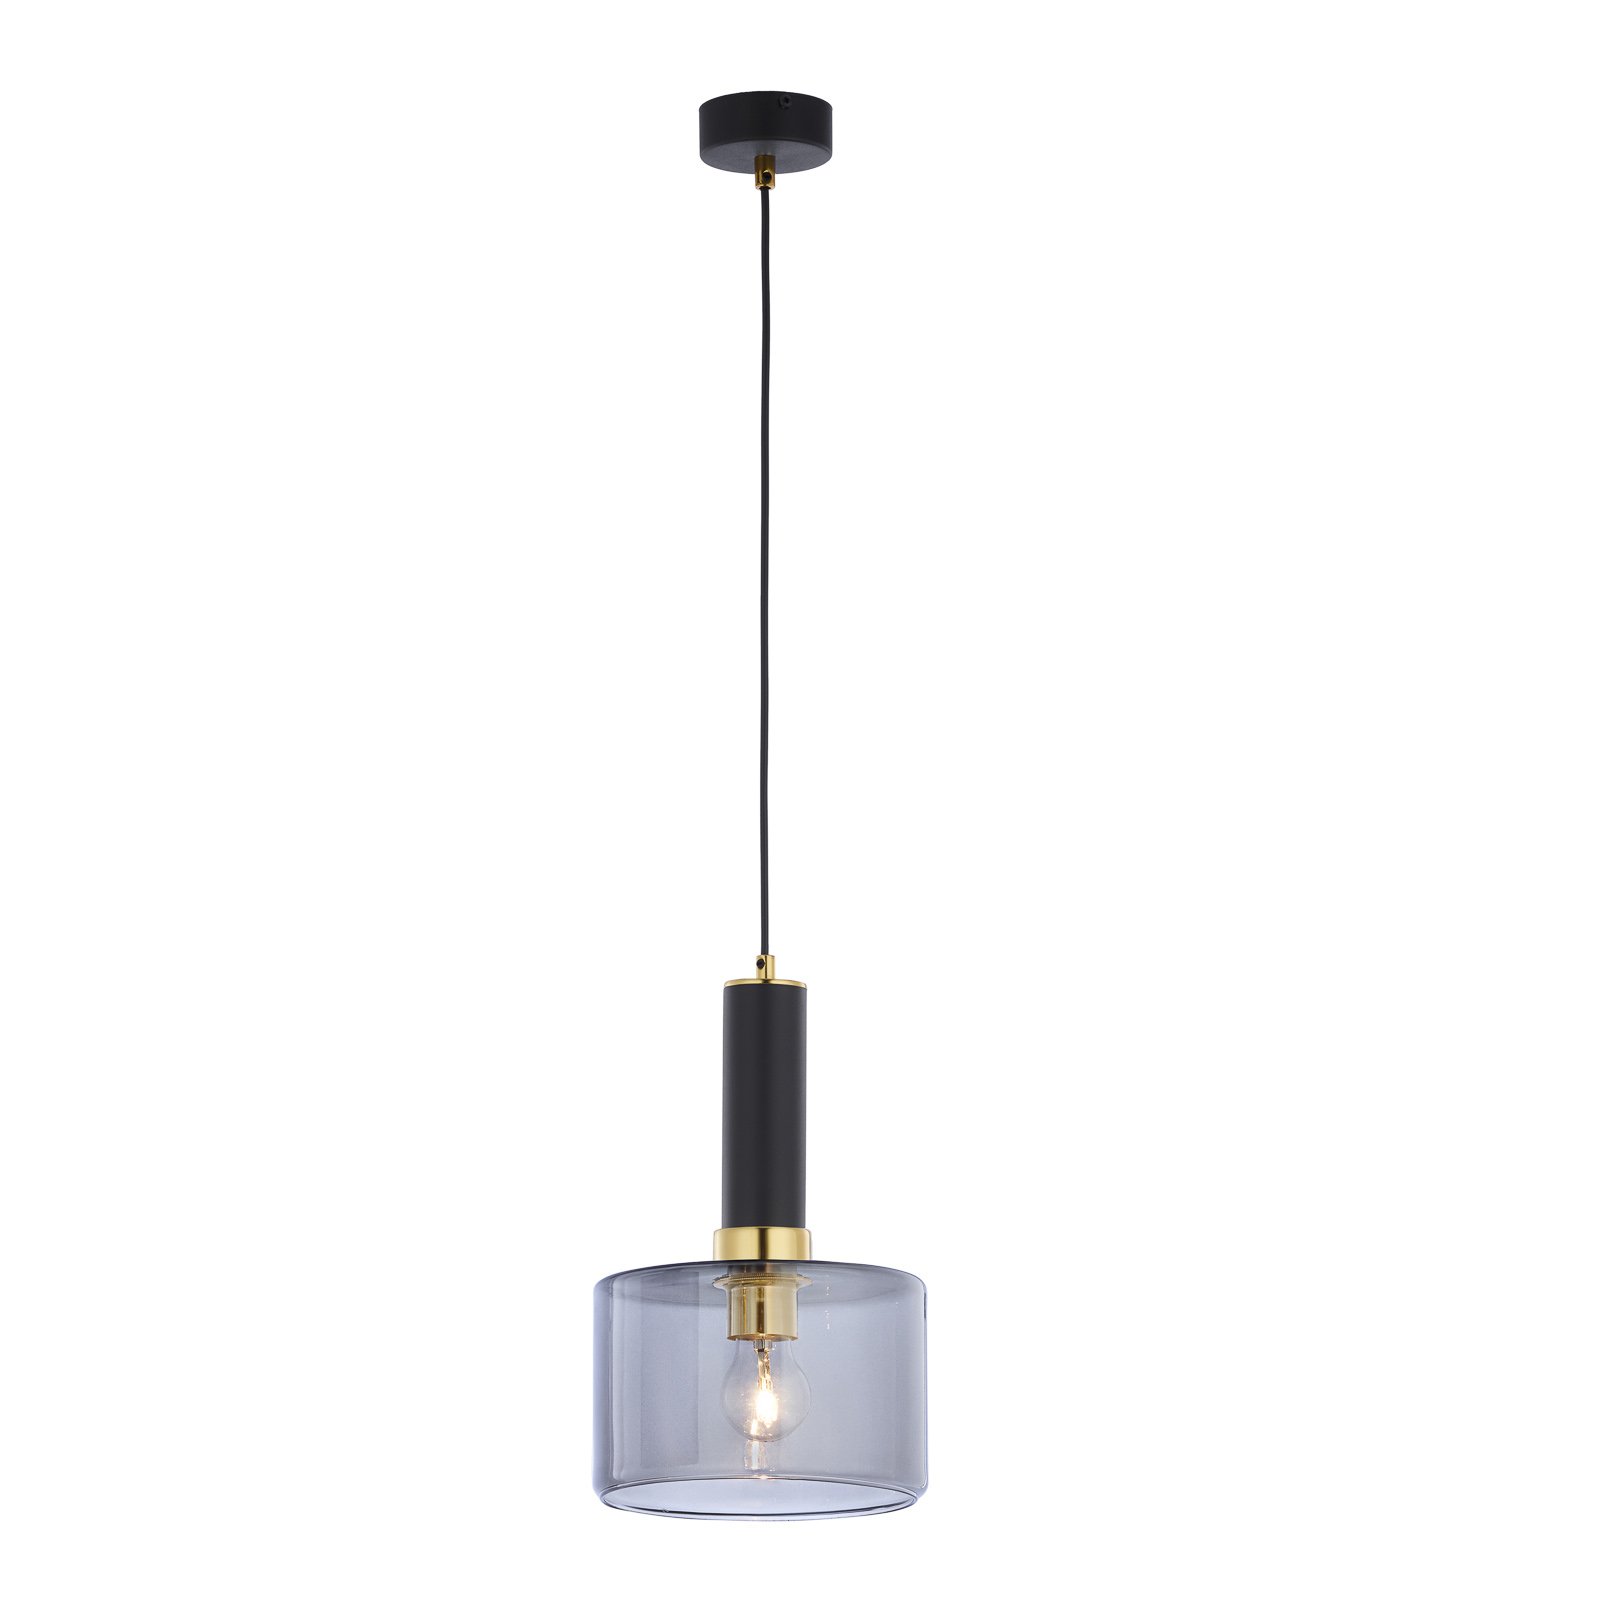 Hanglamp Viva, rook/zwart/messing, 1-lamp